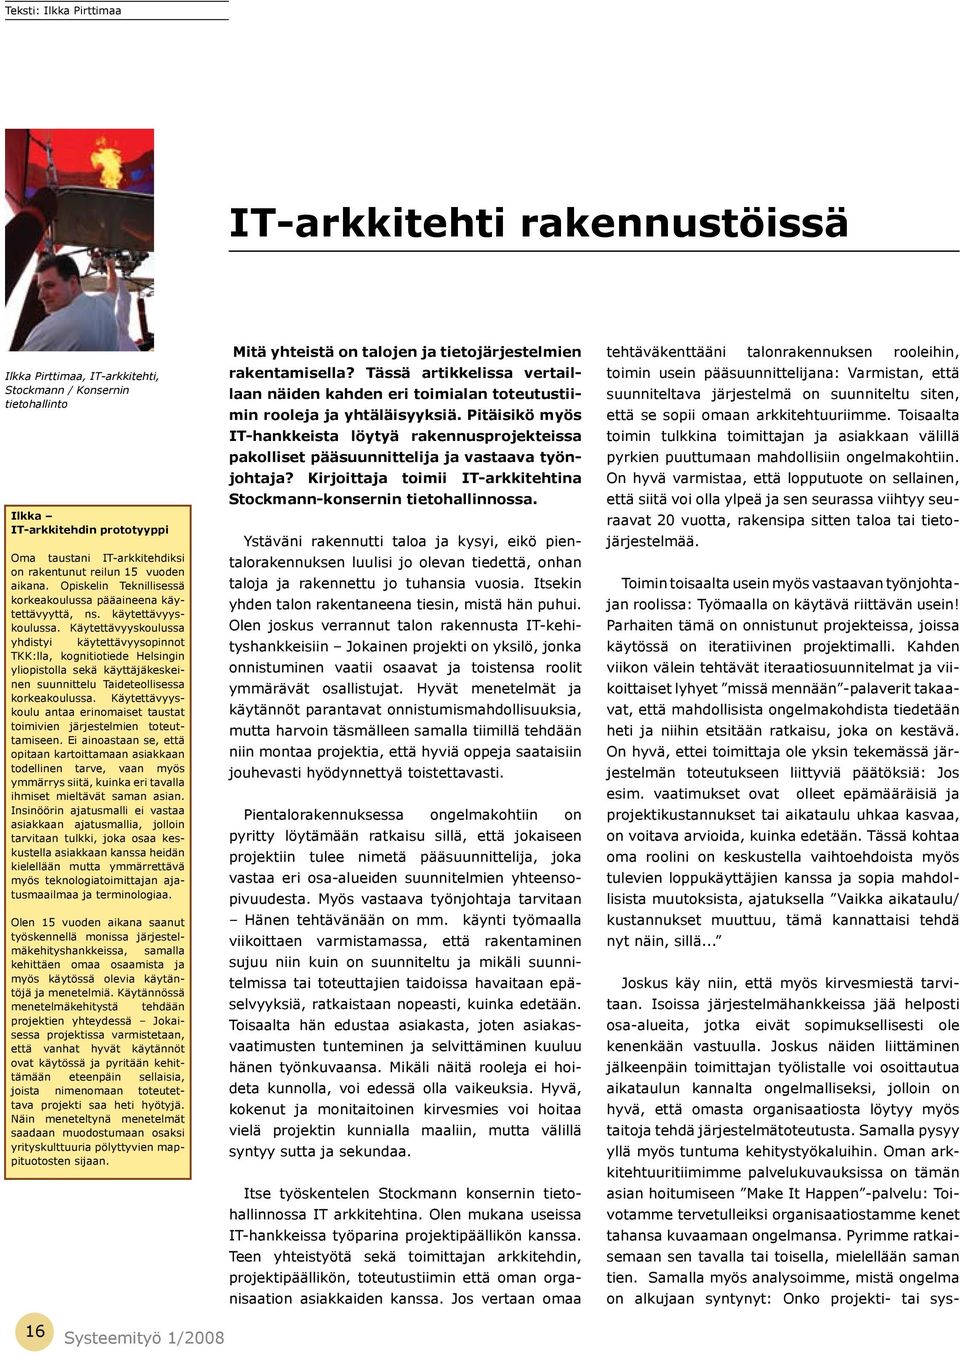 Käytettävyyskoulussa yhdistyi käytettävyysopinnot TKK:lla, kognitiotiede Helsingin yliopistolla sekä käyttäjäkeskeinen suunnittelu Taideteollisessa korkeakoulussa.